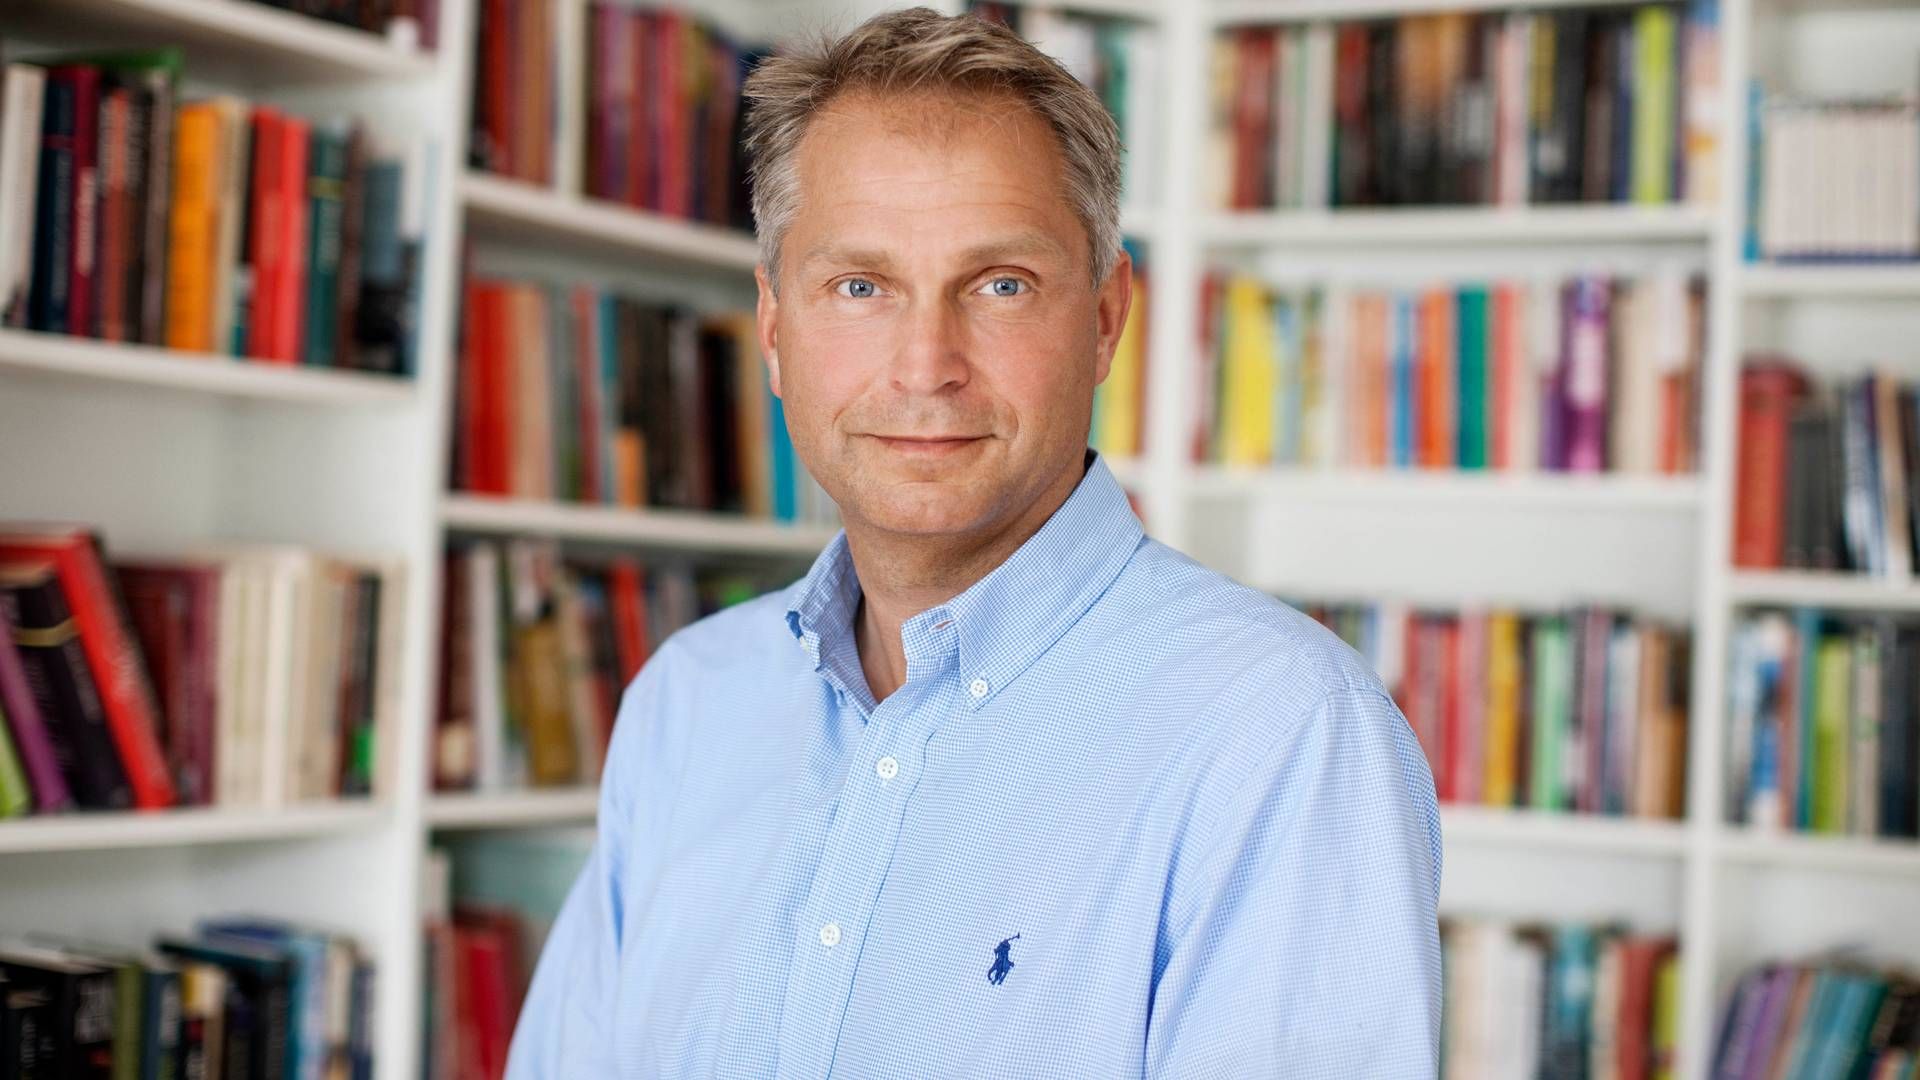 Adm. direktør Lars Boesgaard kan glæde sig over en vækst i omsætningen hos Lindhardt og Ringhof på 35 pct. | Foto: Pr/lindhardt og Ringhof